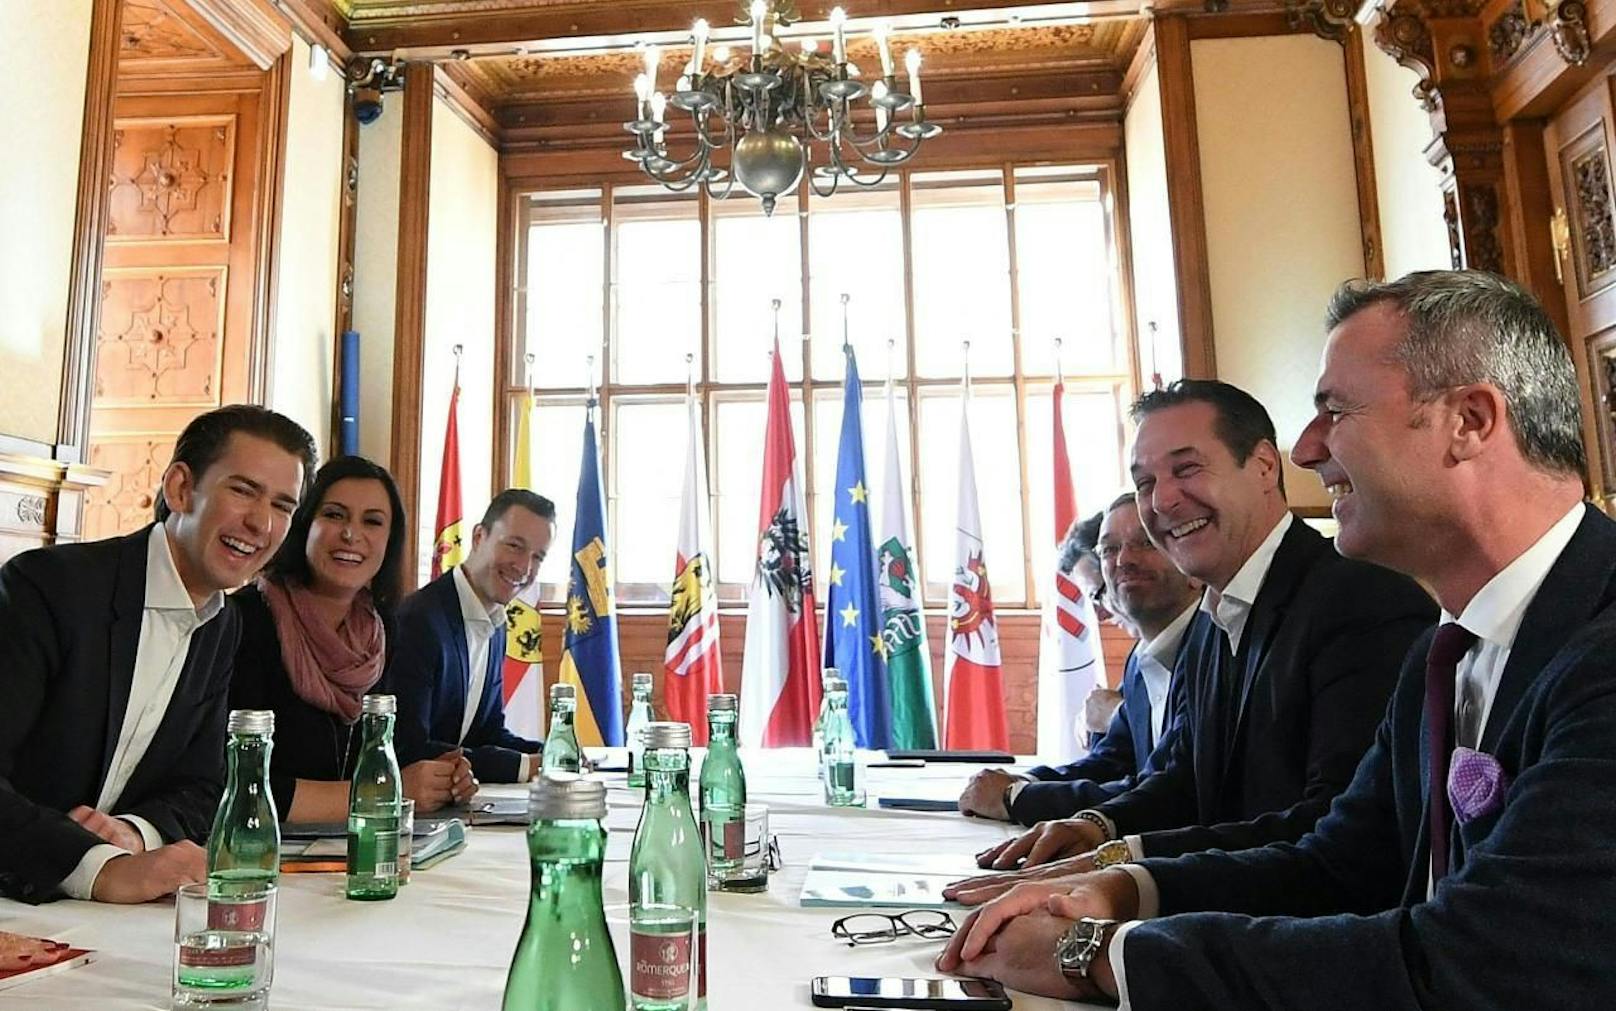 (v.l.) Sebastian Kurz (ÖVP), Elisabeth Köstinger (ÖVP) und Gernot Blümel (ÖVP) sowie Norbert Nemeth (FPÖ), Herbert Kickl (FPÖ), Heinz Christian Strache (FPÖ) im Rahmen der ersten Runde von Koalitionsverhandlungen zwischen ÖVP und FPÖ am Mittwoch, 25. Oktober 2017, in Wien.